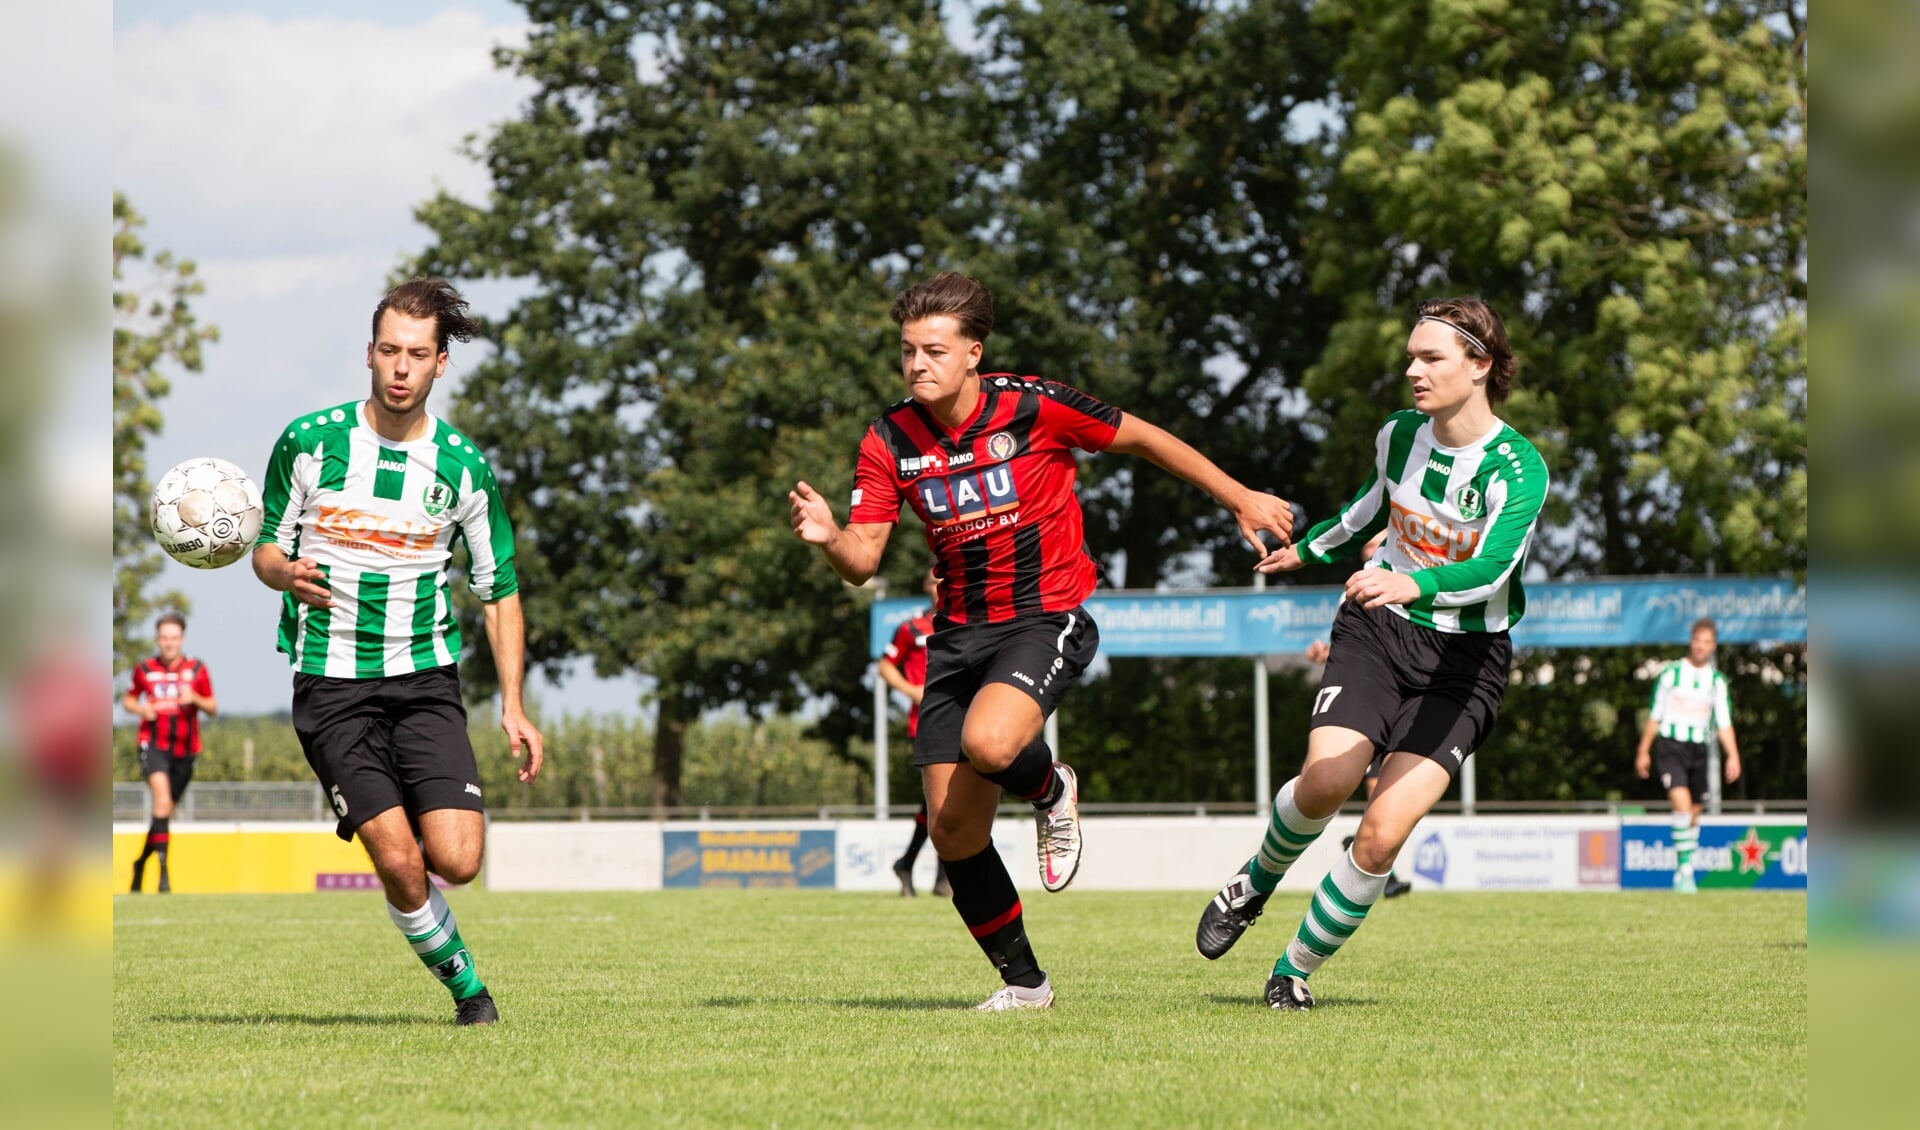 Voetbalwedstrijd VVT Tricht (groen/witte shirts) tegen BVV Den Bosch